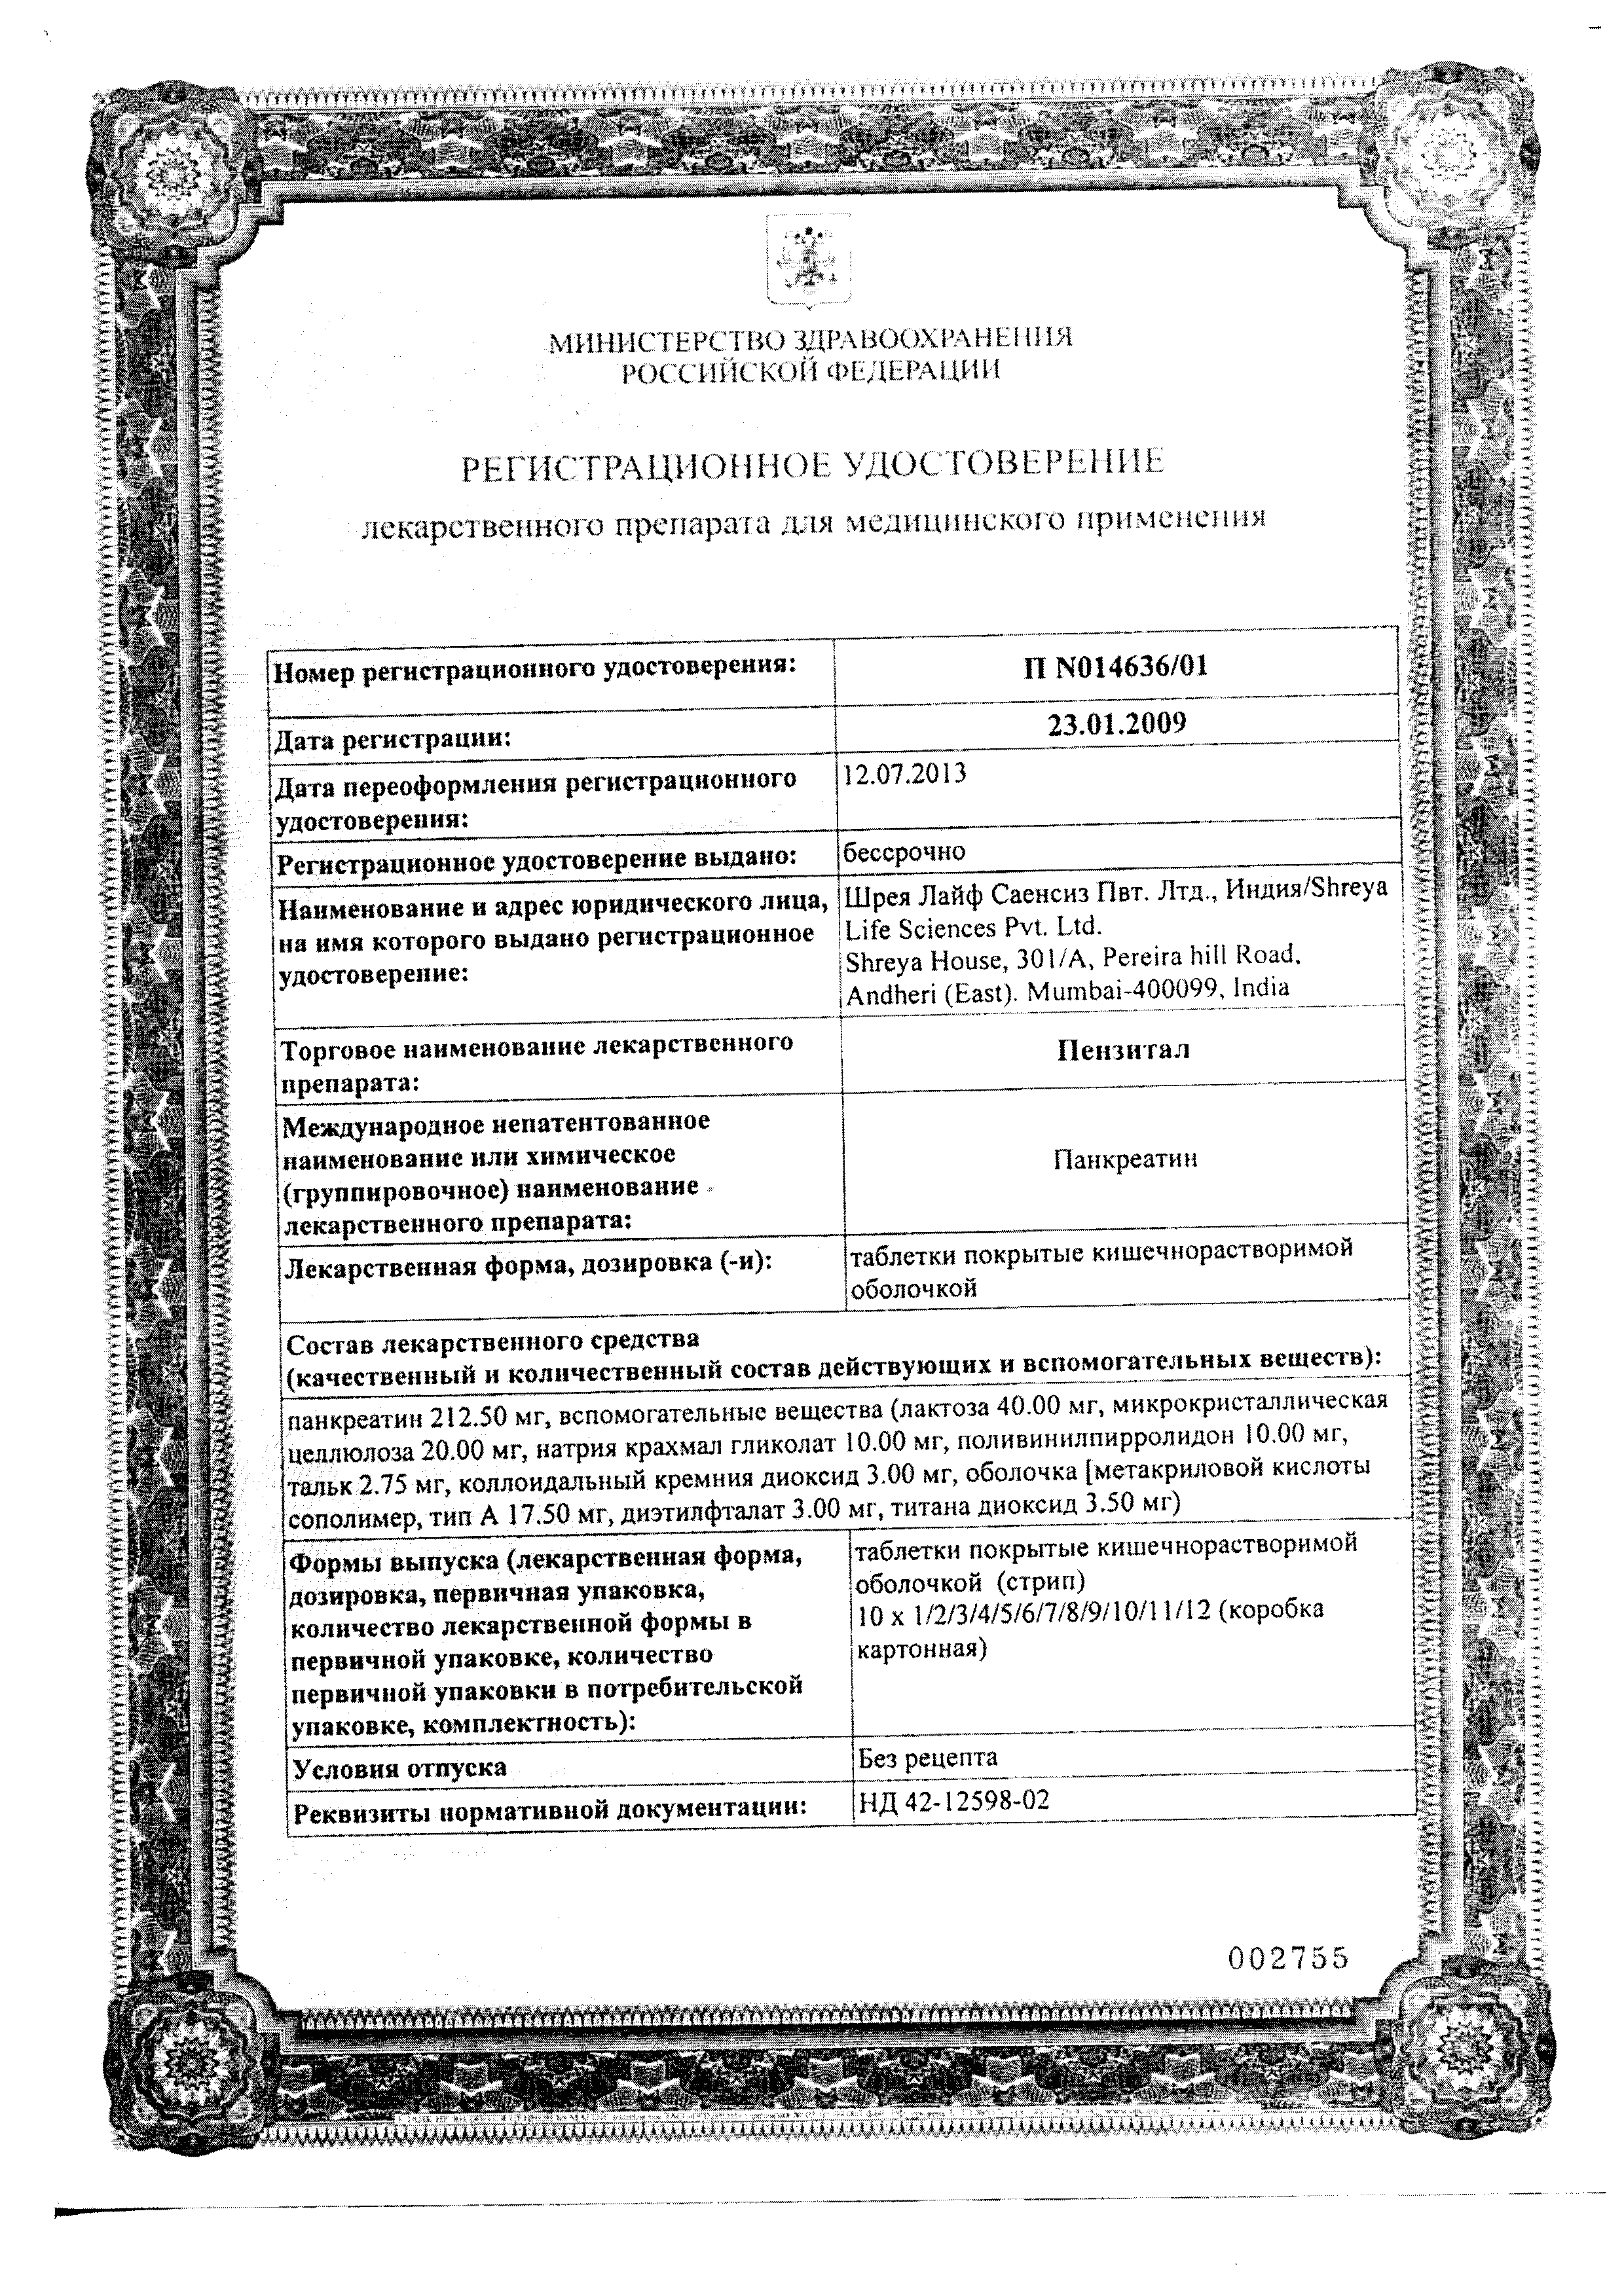 Пензитал сертификат